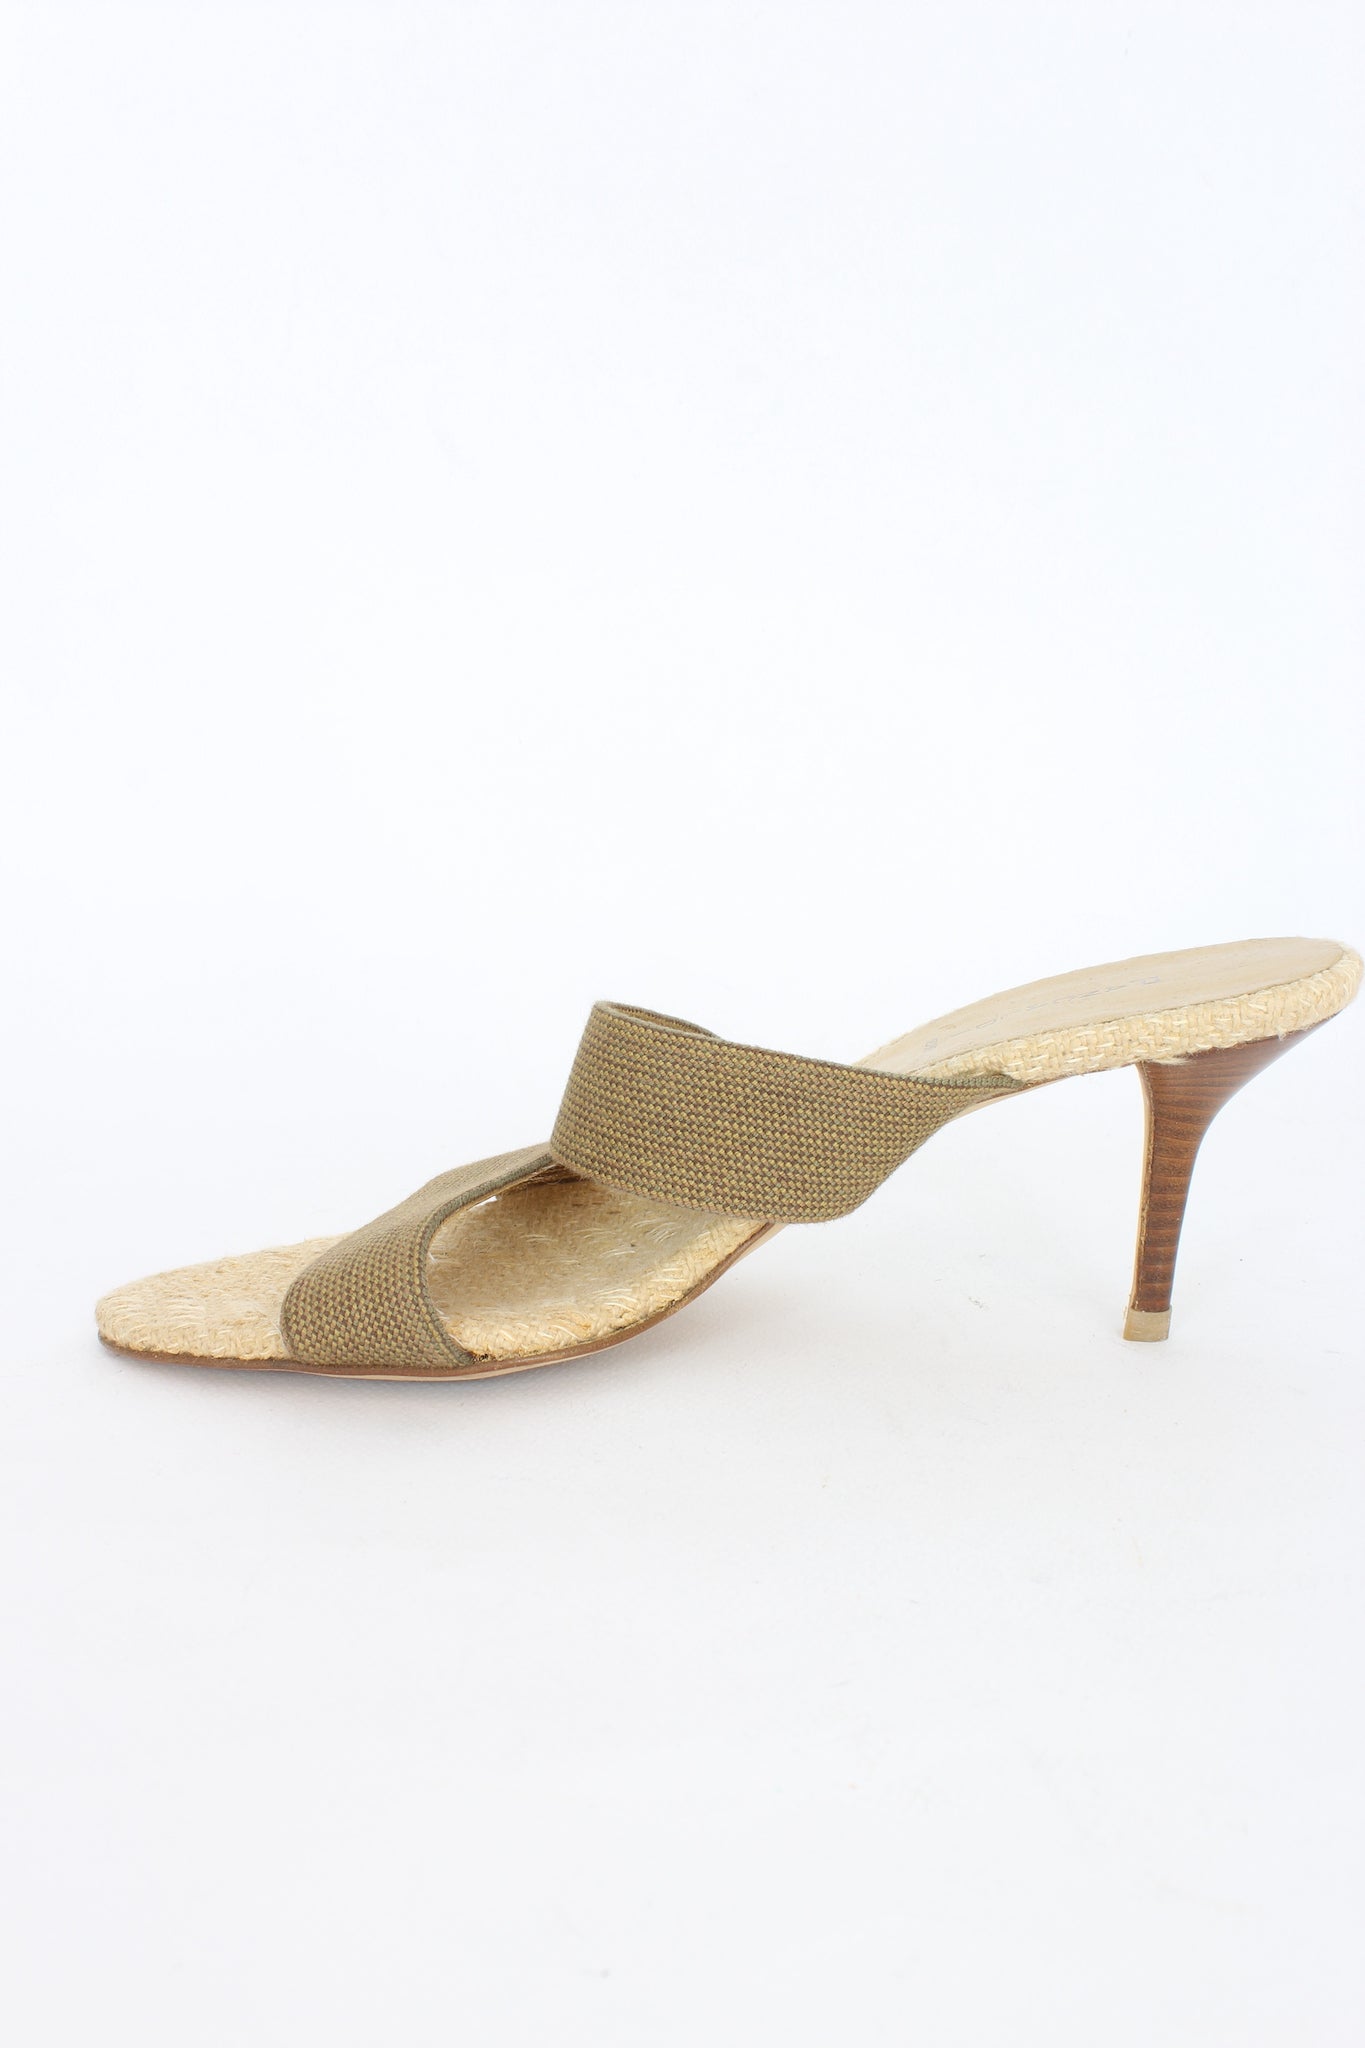 Pancaldi Scarpe Sandalo Pelle Beige Vintage Anni 90